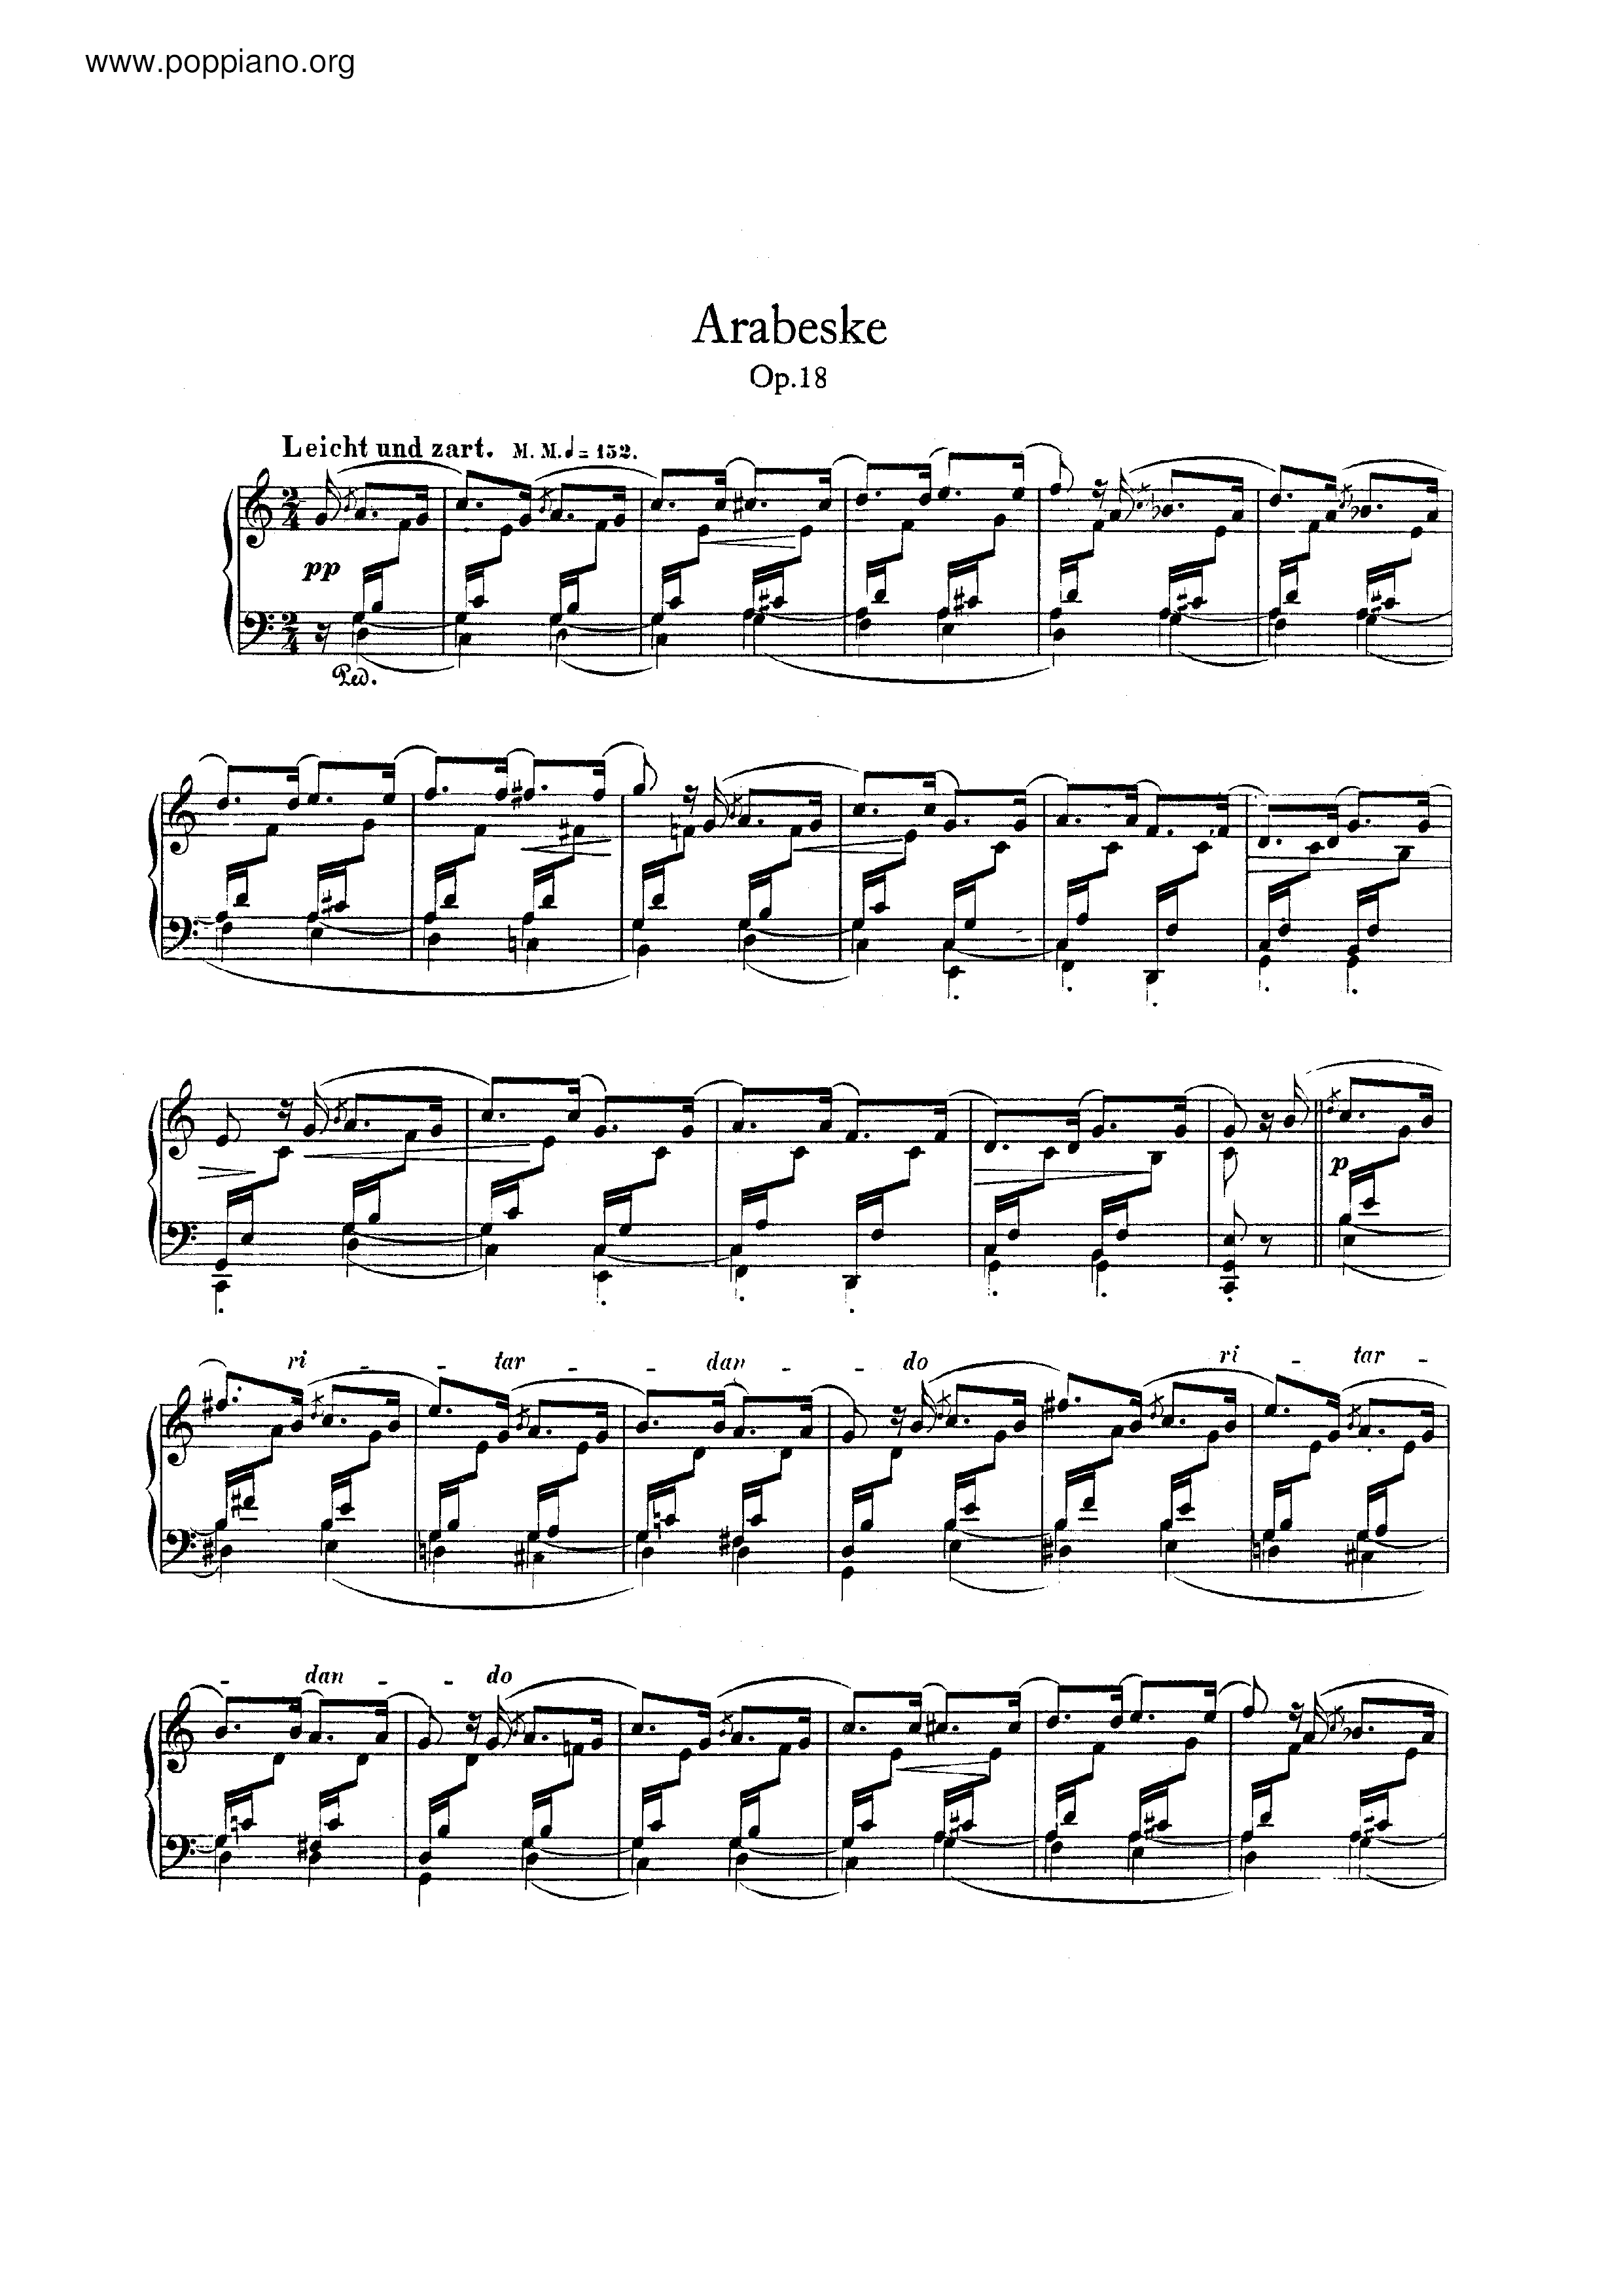 Arabeske, Op.18 Score